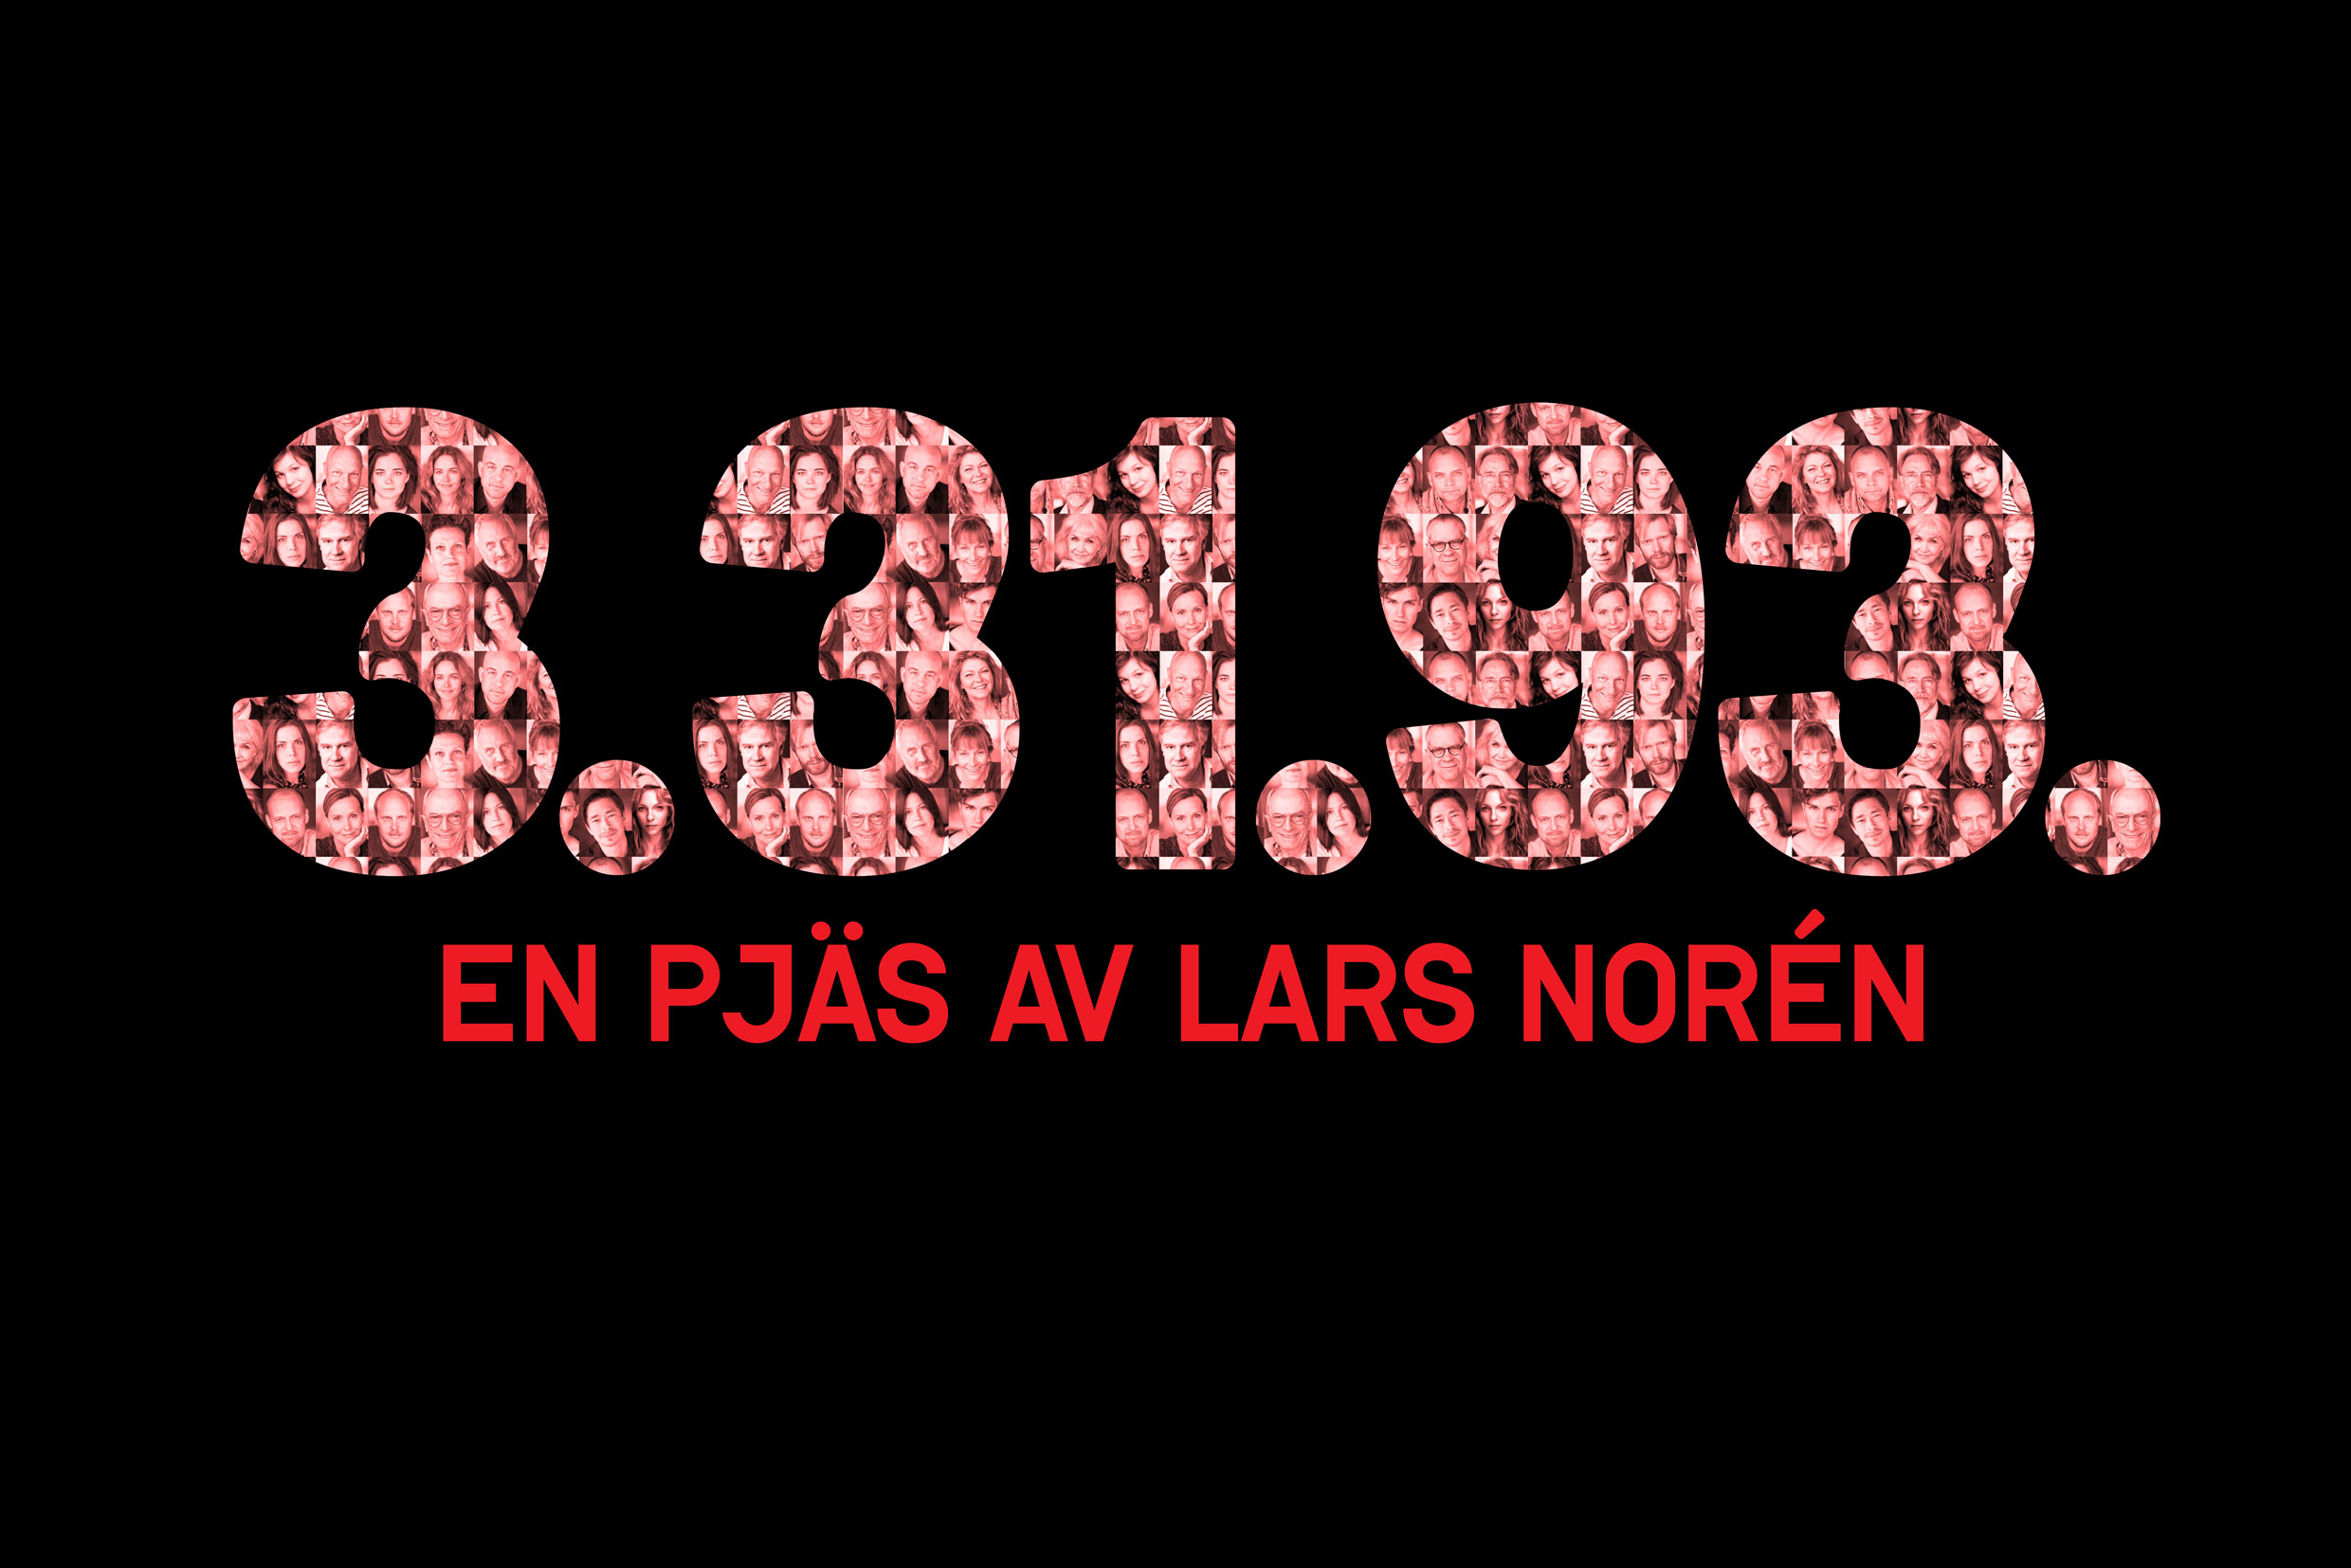 3.31.93 av Lars Norén. Urpremiär 23 augusti på Klarascenen.